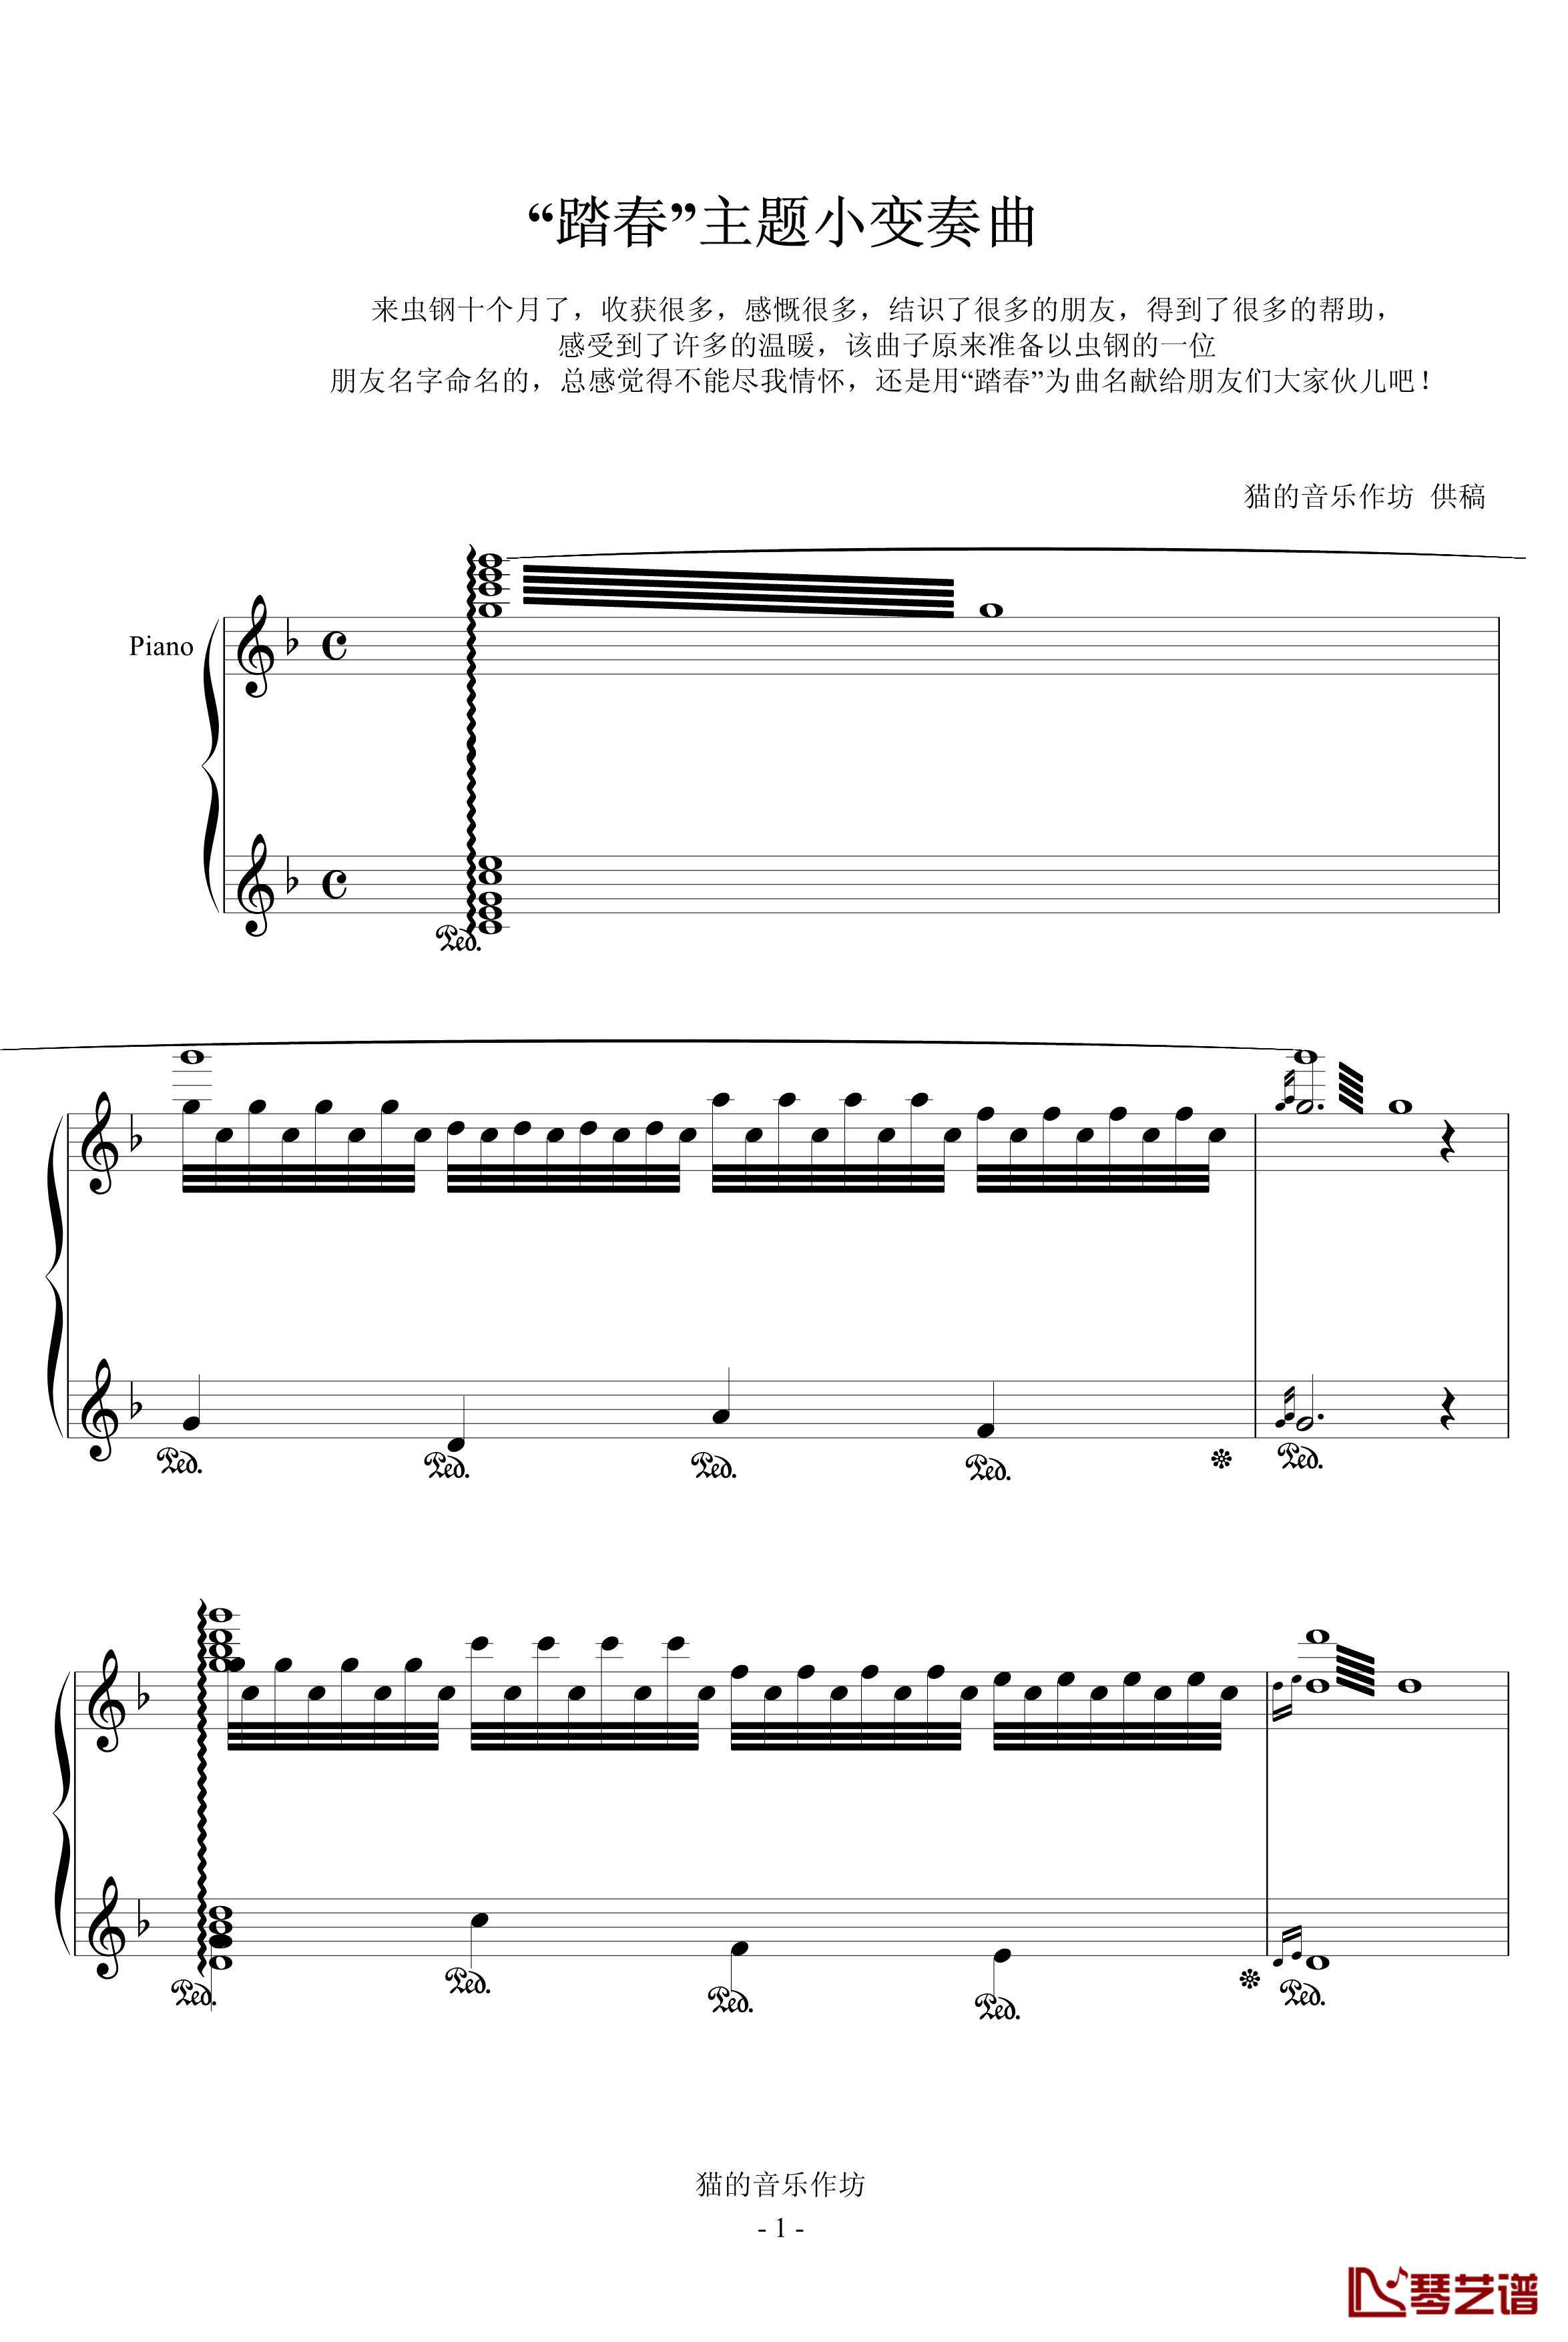 踏春主题小变奏曲钢琴谱-音乐作坊1